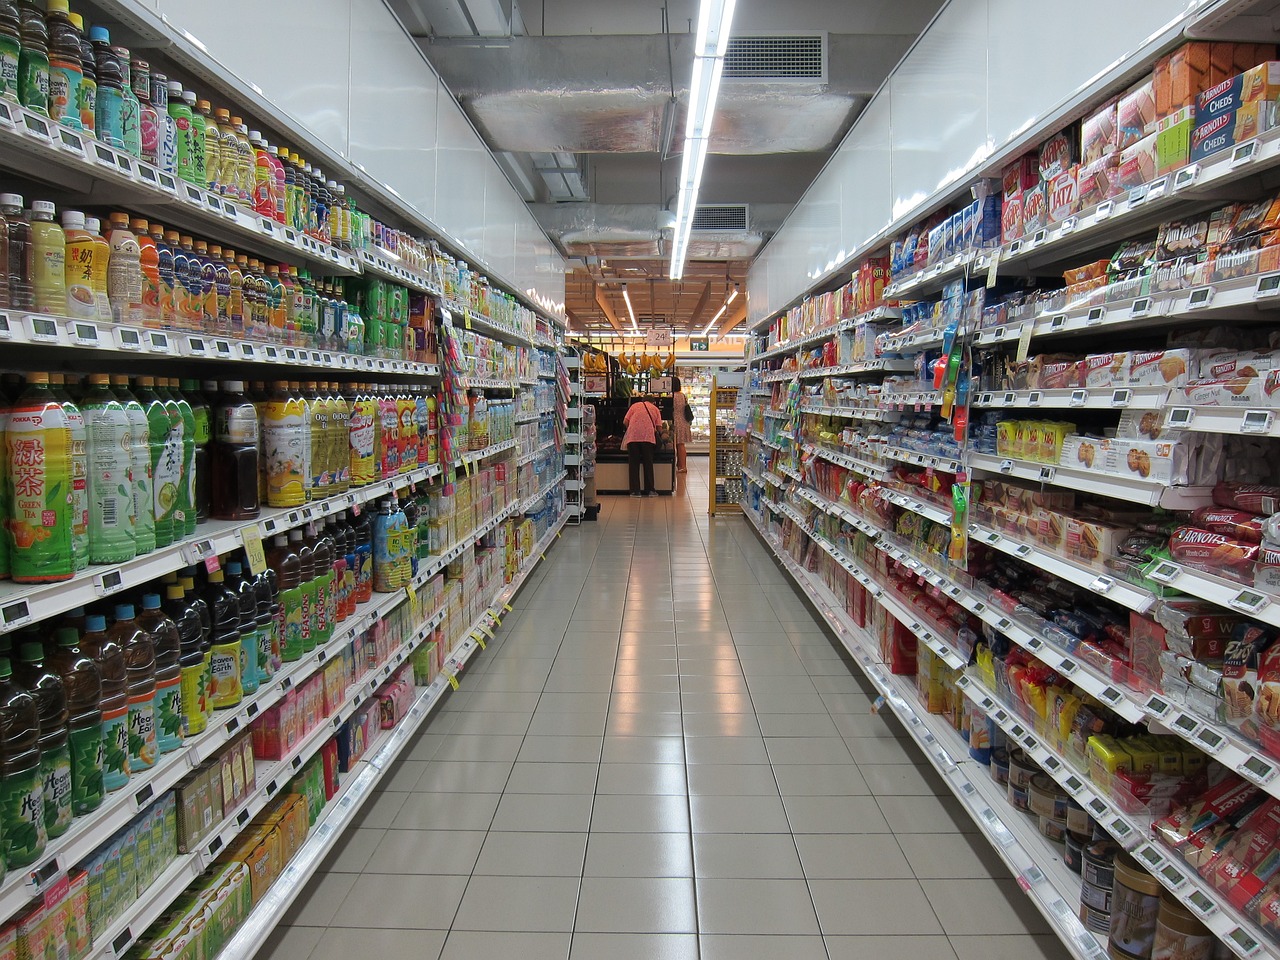 Supermercados y el comportamiento de muchos compradores: sirve o no según varias teorías